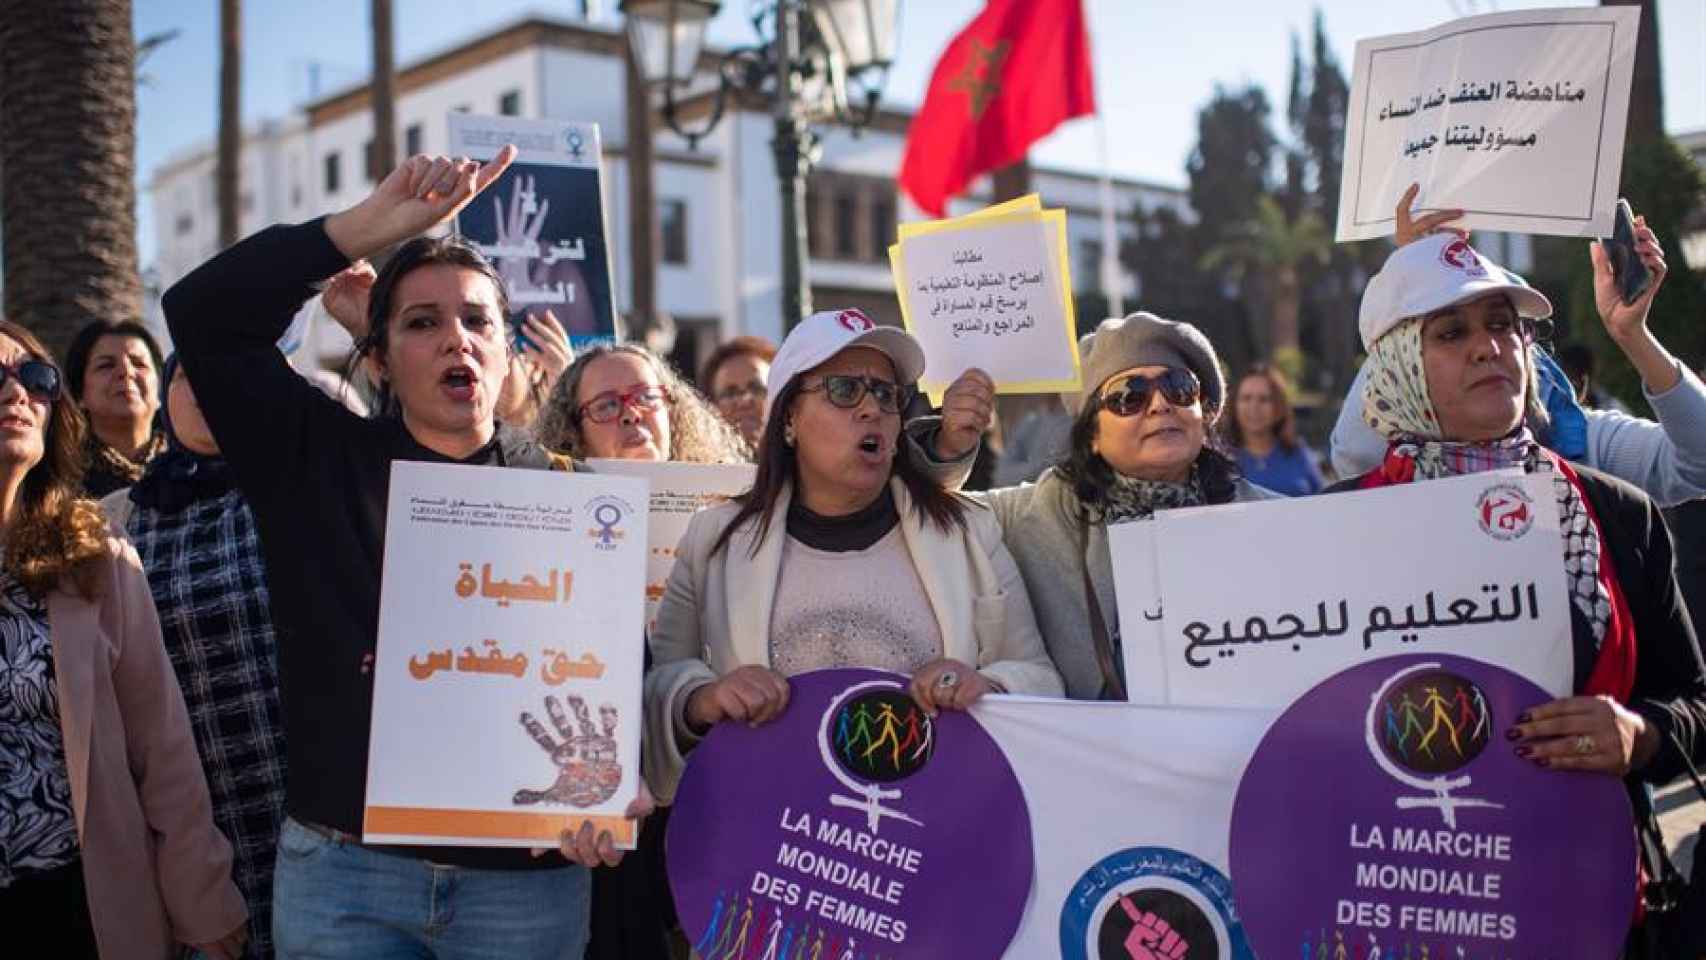 Se cumple el ultimátum de Mohamed VI para que se amplíen los derechos de las mujeres en Marruecos